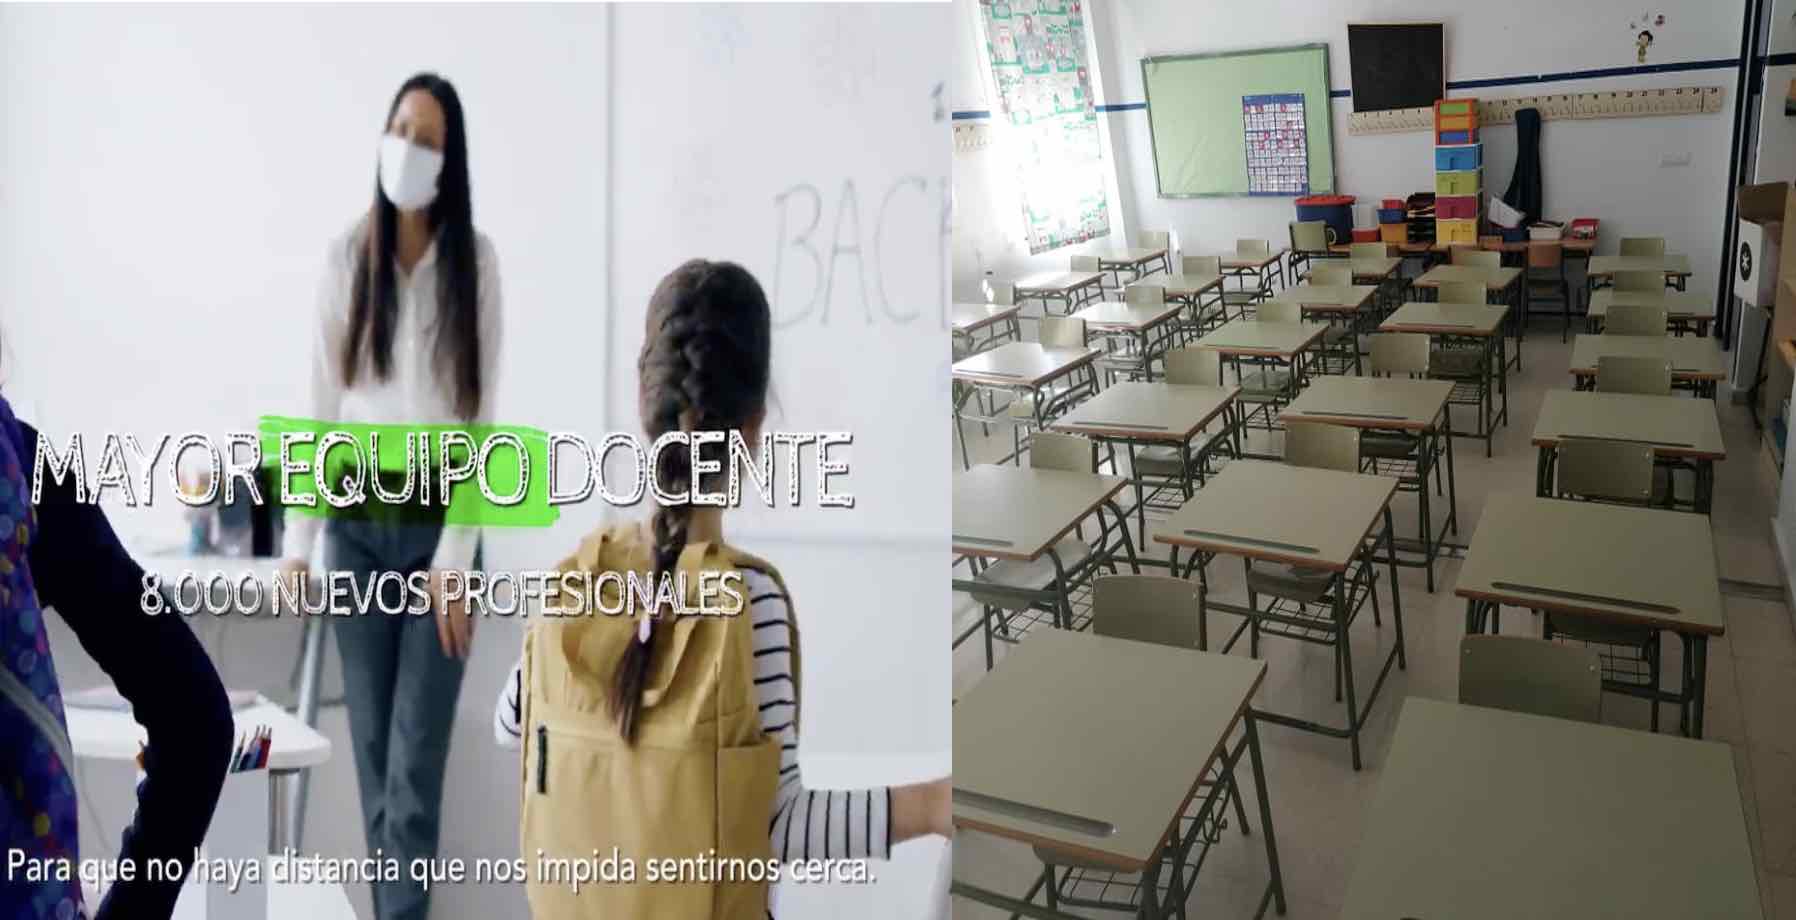 A la izquierda, detalle de un video promocional de la Junta sobre la vuelta al cole; a la derecha, estado actual de un aula en un colegio público andaluz.